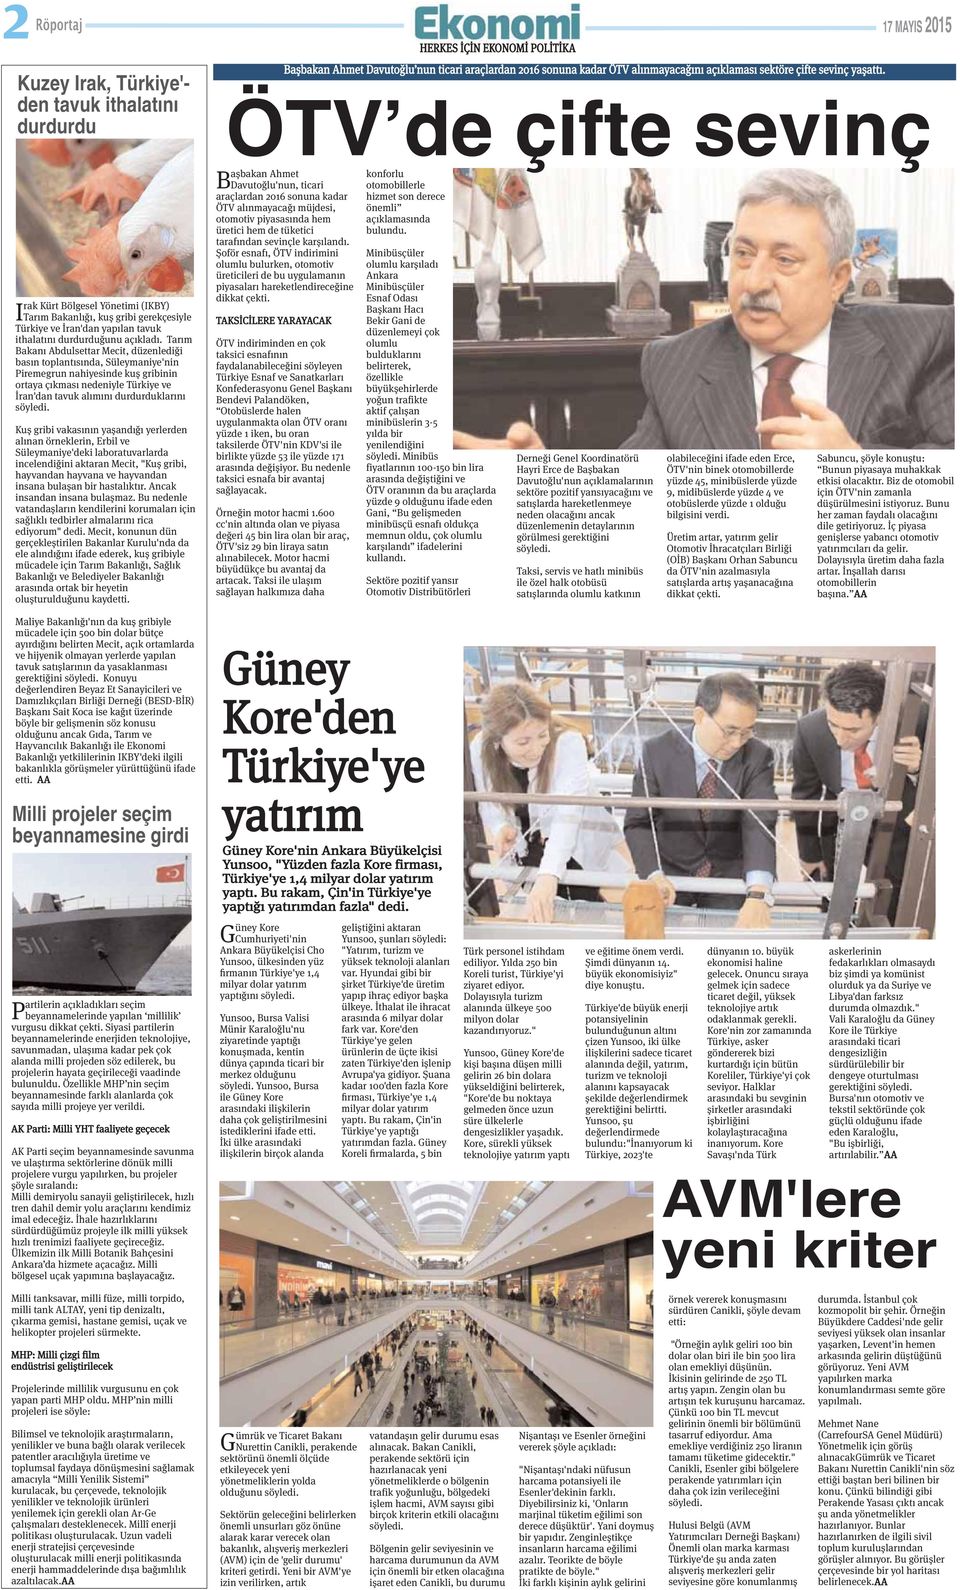 Tarım Bakanı Abdulsettar Mecit, düzenlediği basın toplantısında, Süleymaniye'nin Piremegrun nahiyesinde kuş gribinin ortaya çıkması nedeniyle Türkiye ve İran'dan tavuk alımını durdurduklarını Kuş